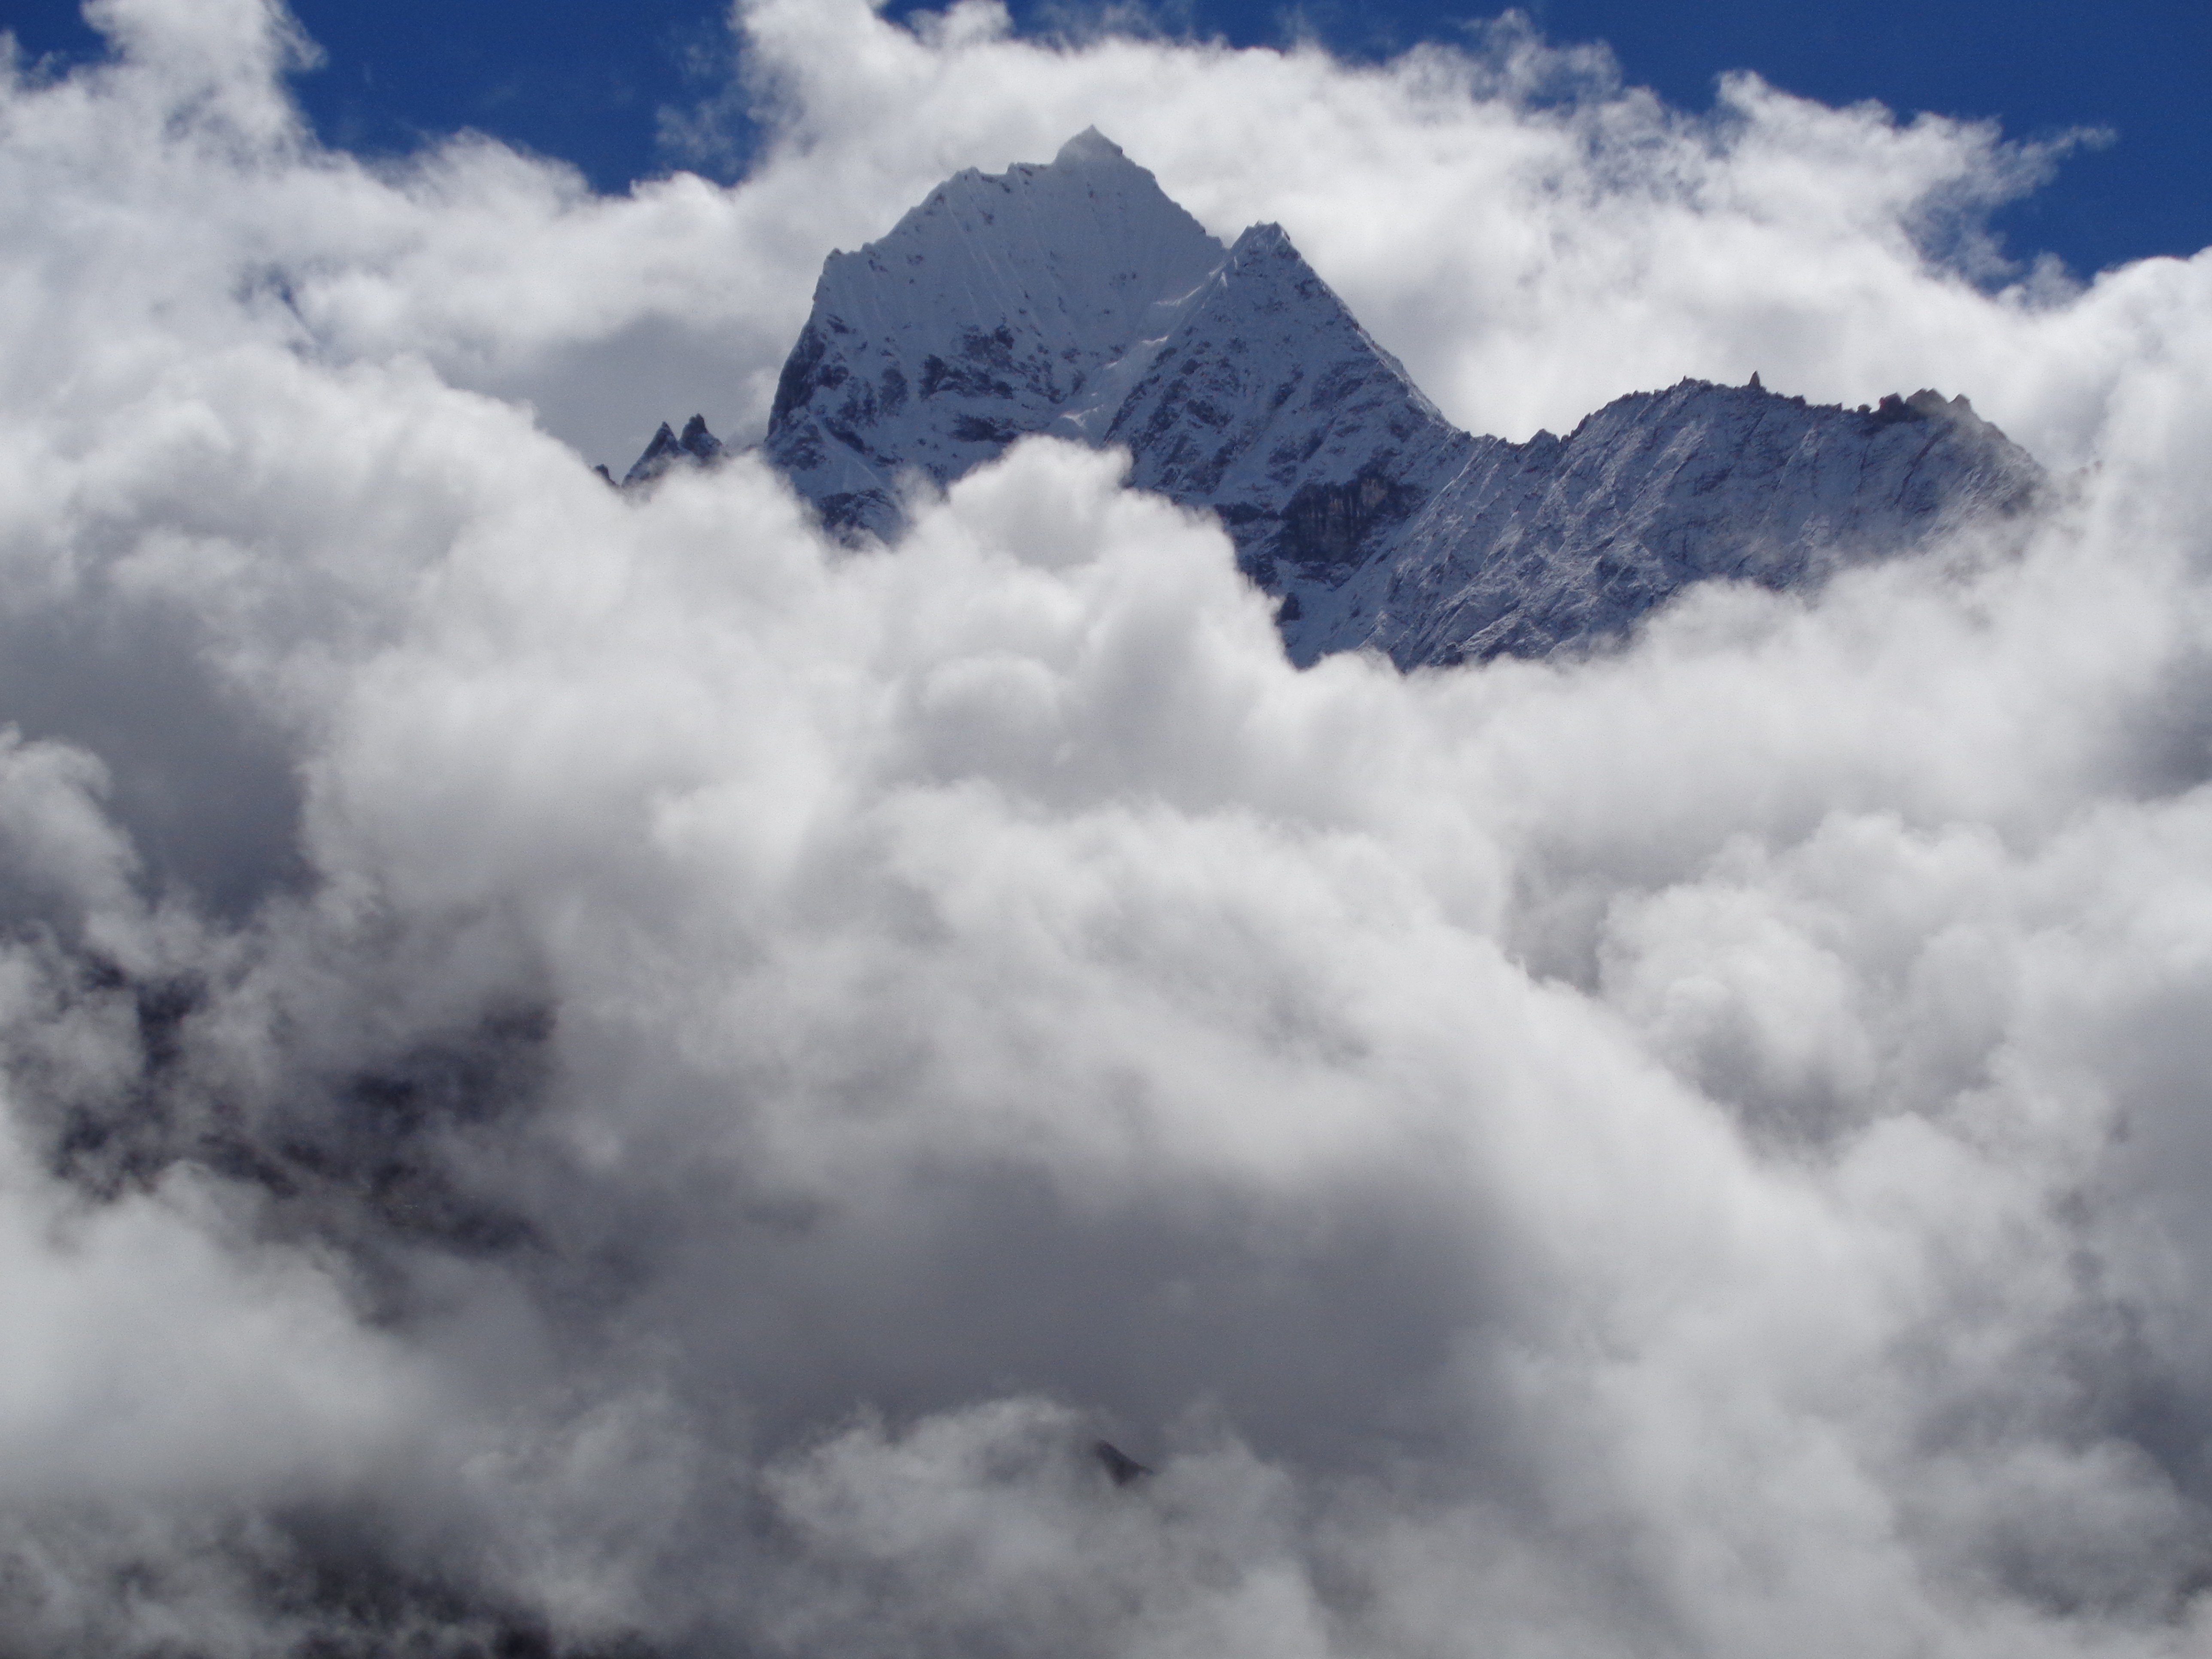 Stunning views in the Everest Region